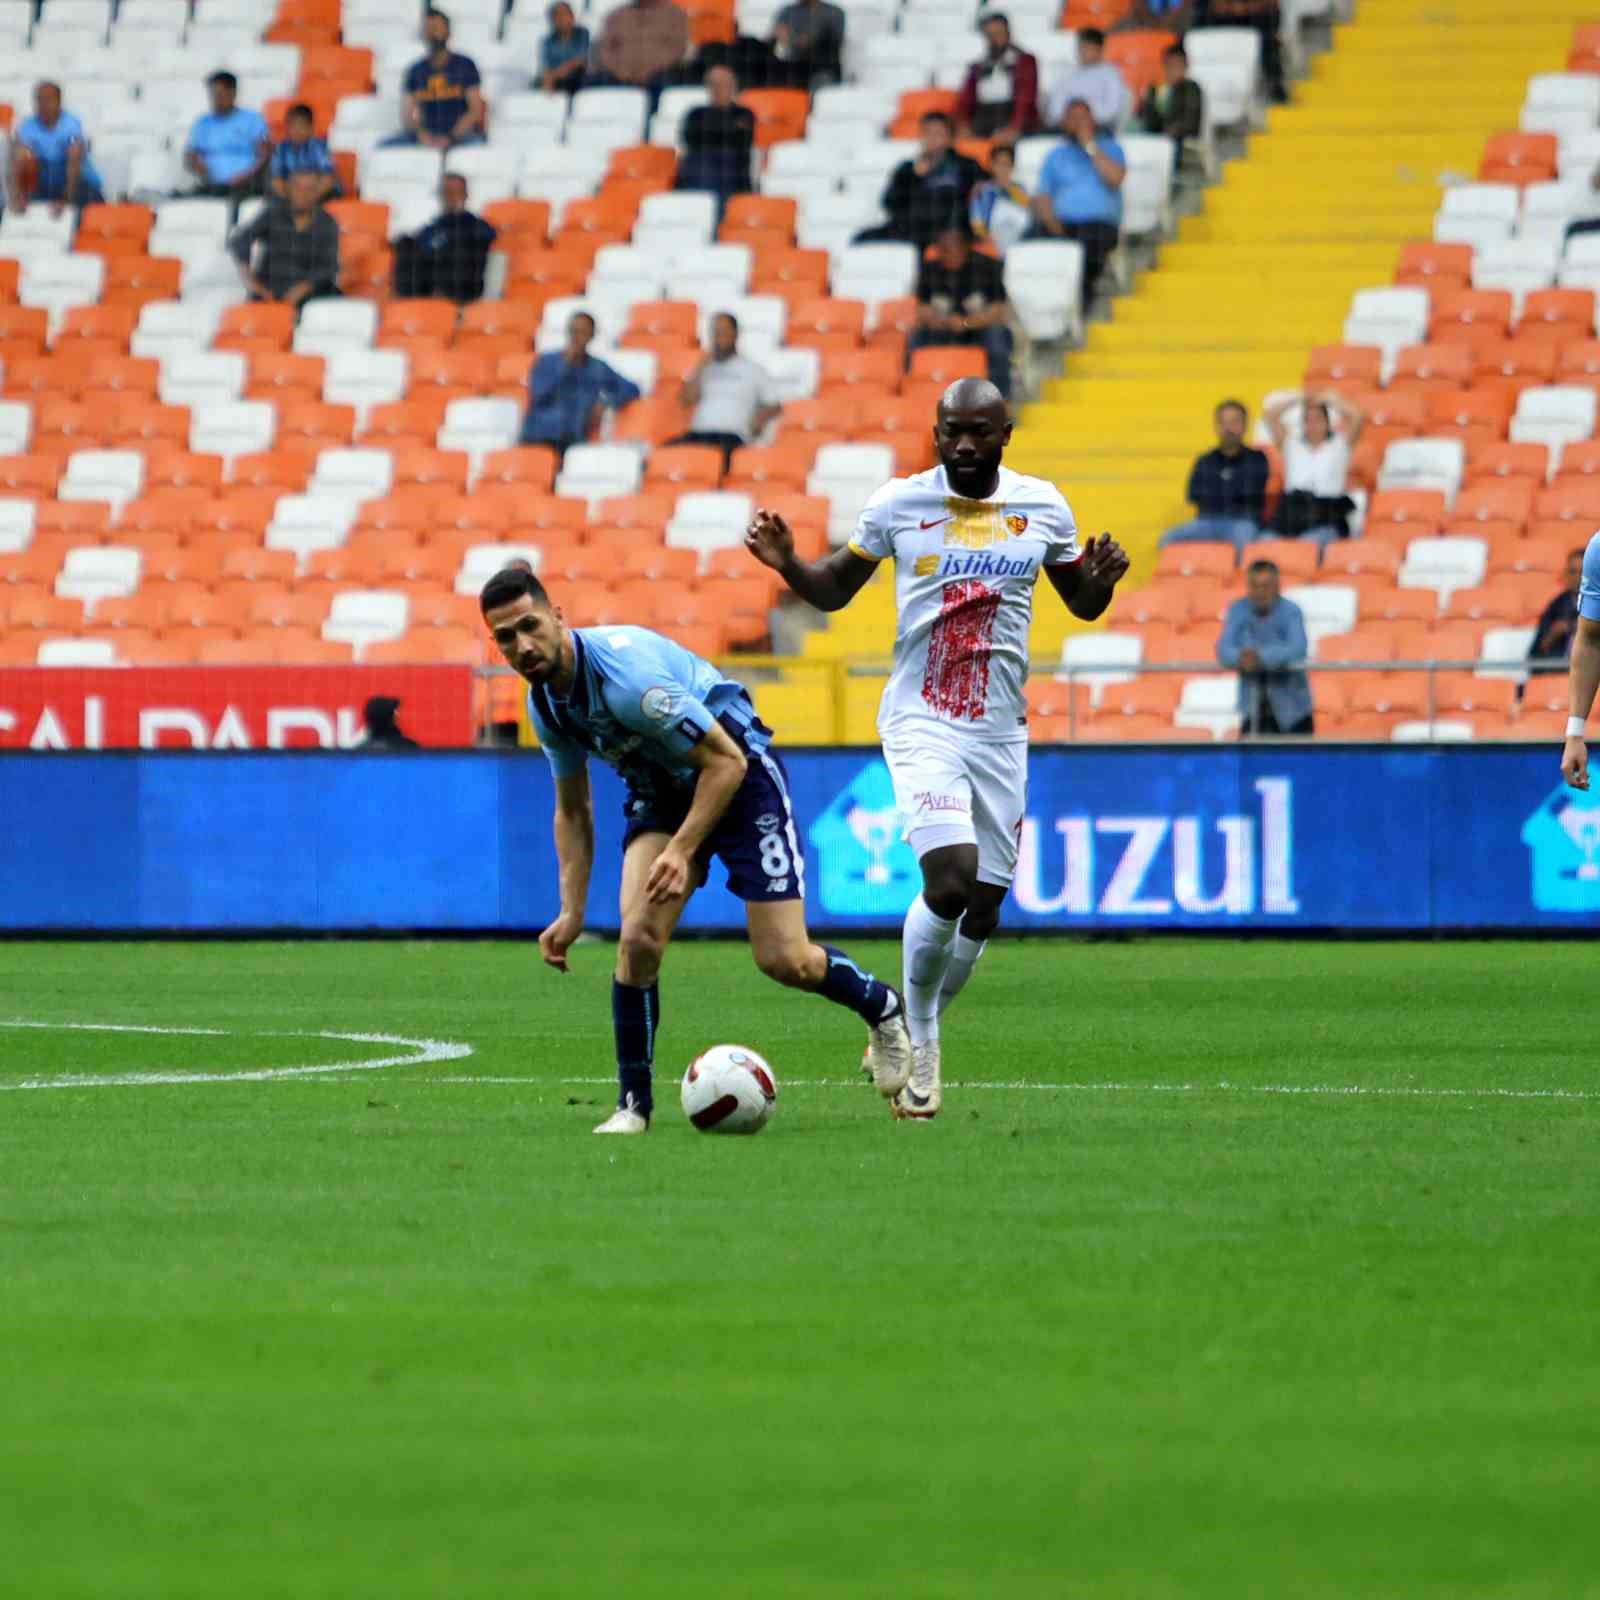 Trendyol Süper Lig: Adana Demirspor: 0 - Kayserispor: 0 (Maç devam ediyor)
